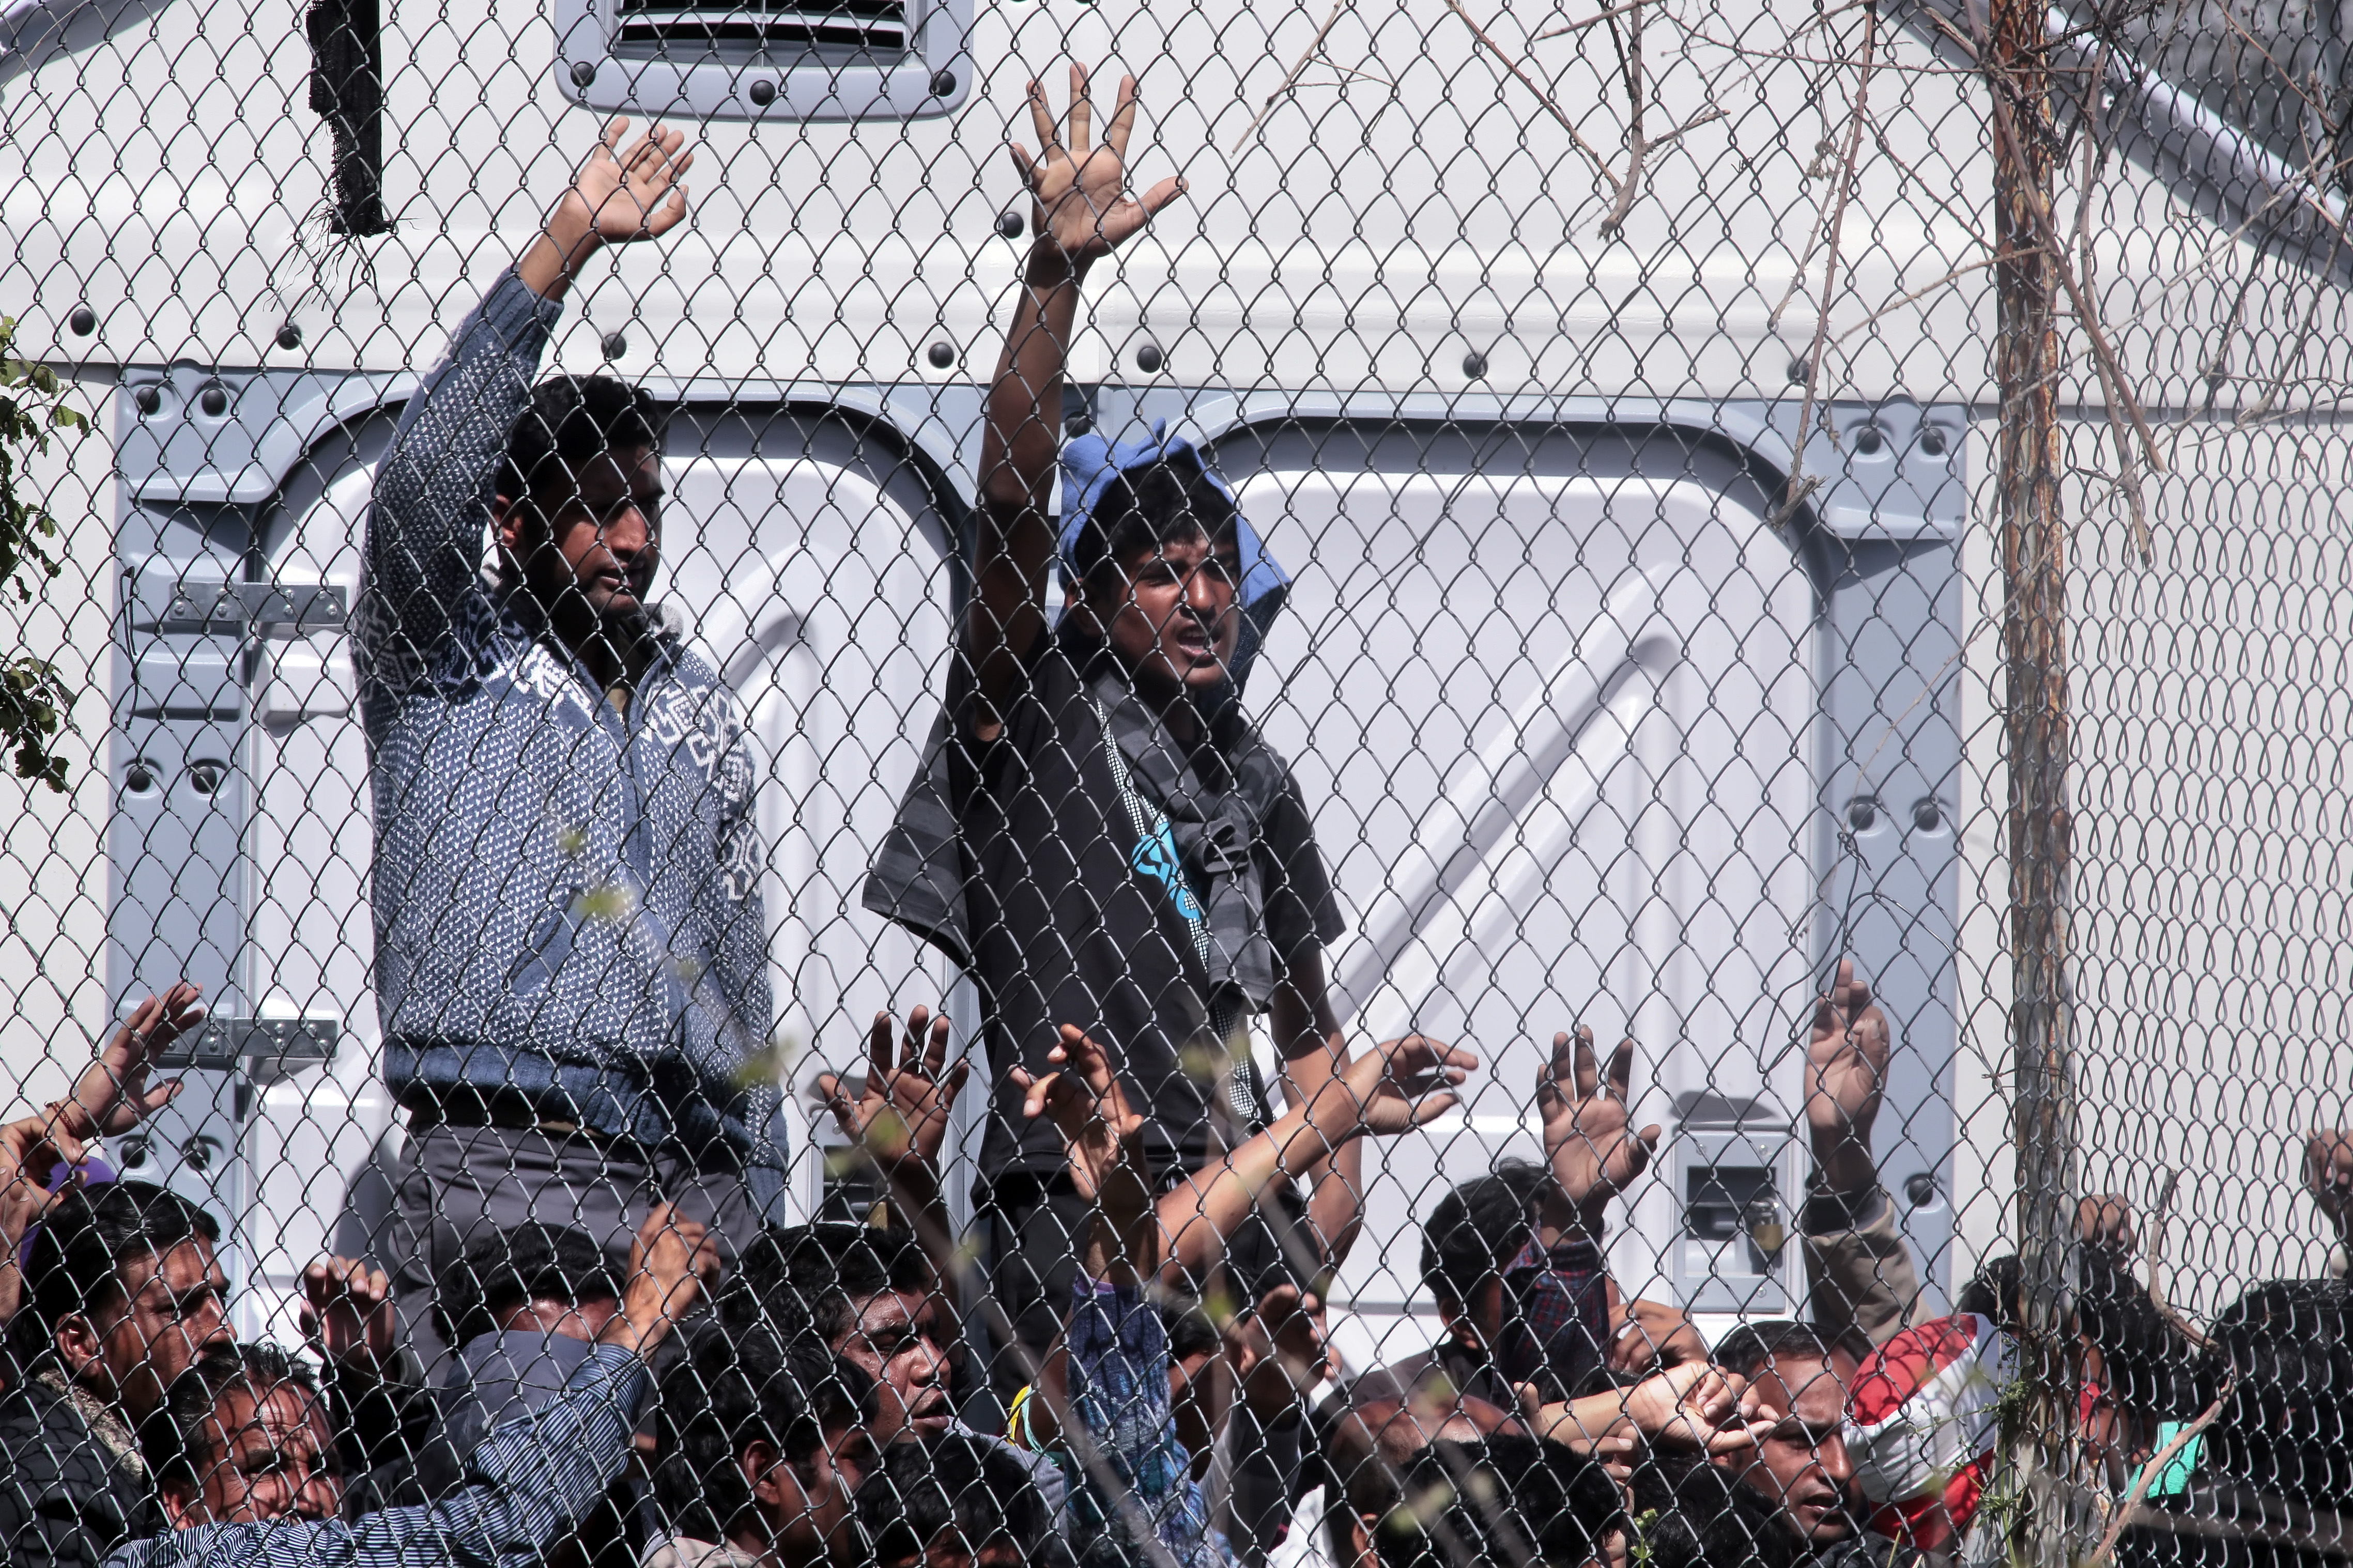 UNO prangert sexuelle Gewalt in griechischen Flüchtlingslagern an